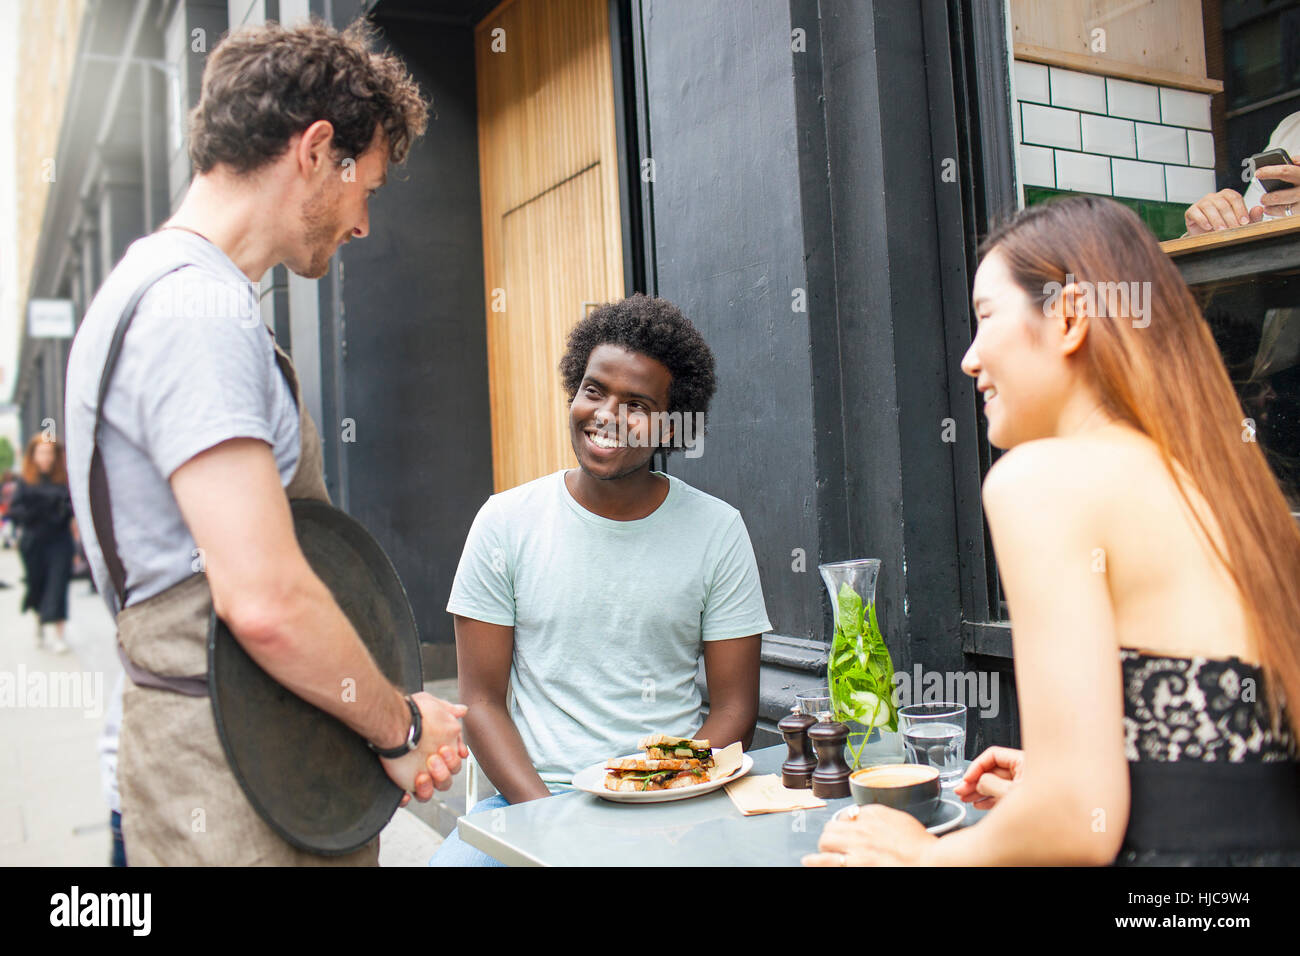 Waiter serving couple at city sidewalk cafe Banque D'Images